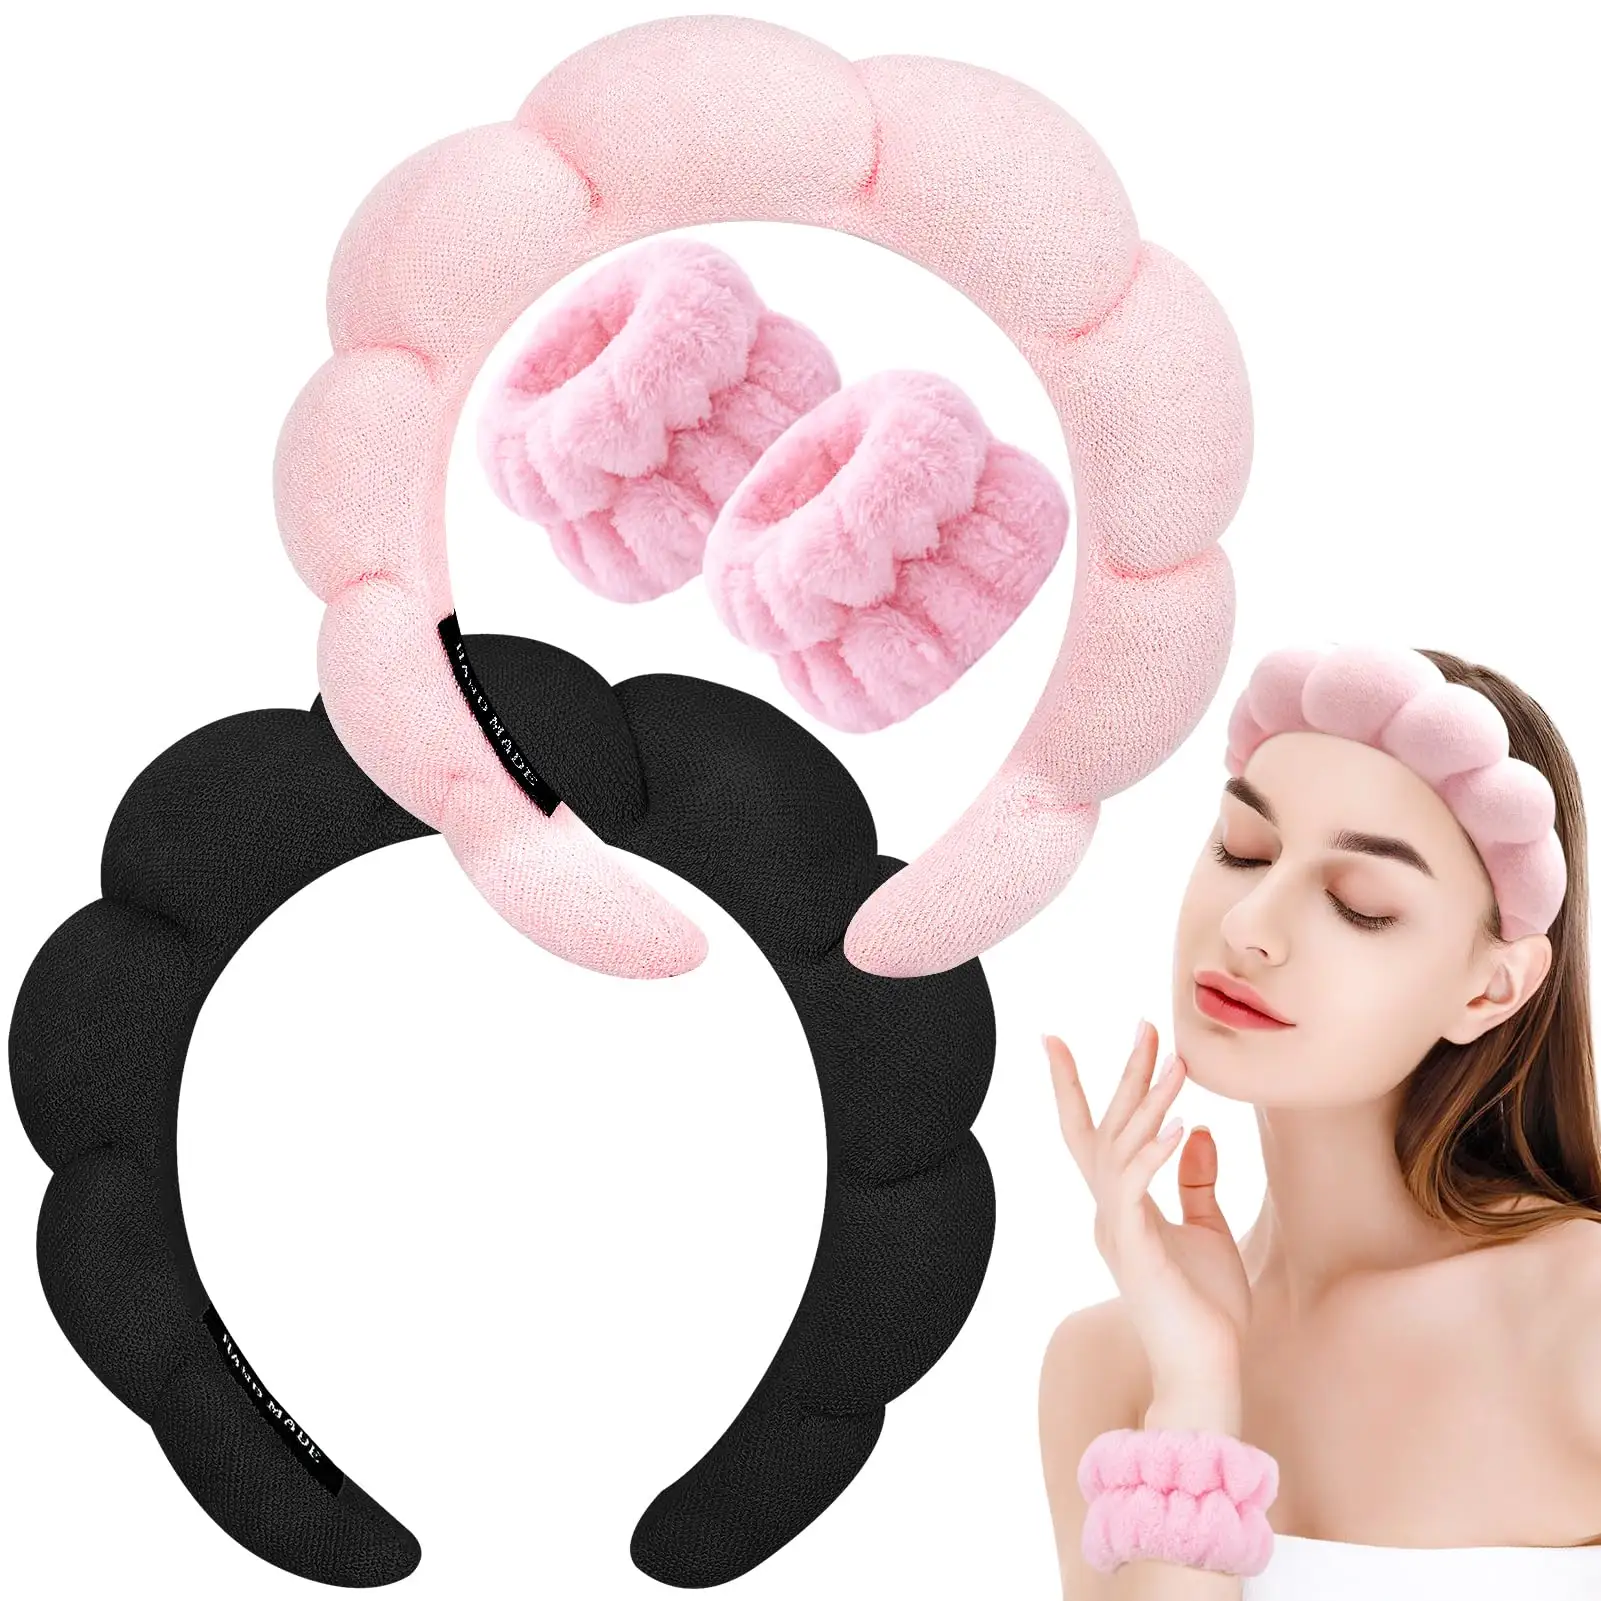 Spa headband cho rửa mặt dây đeo cổ tay thiết lập miếng bọt biển trang điểm chăm sóc da Headband khăn cổ tay hairband cho phụ nữ cô gái